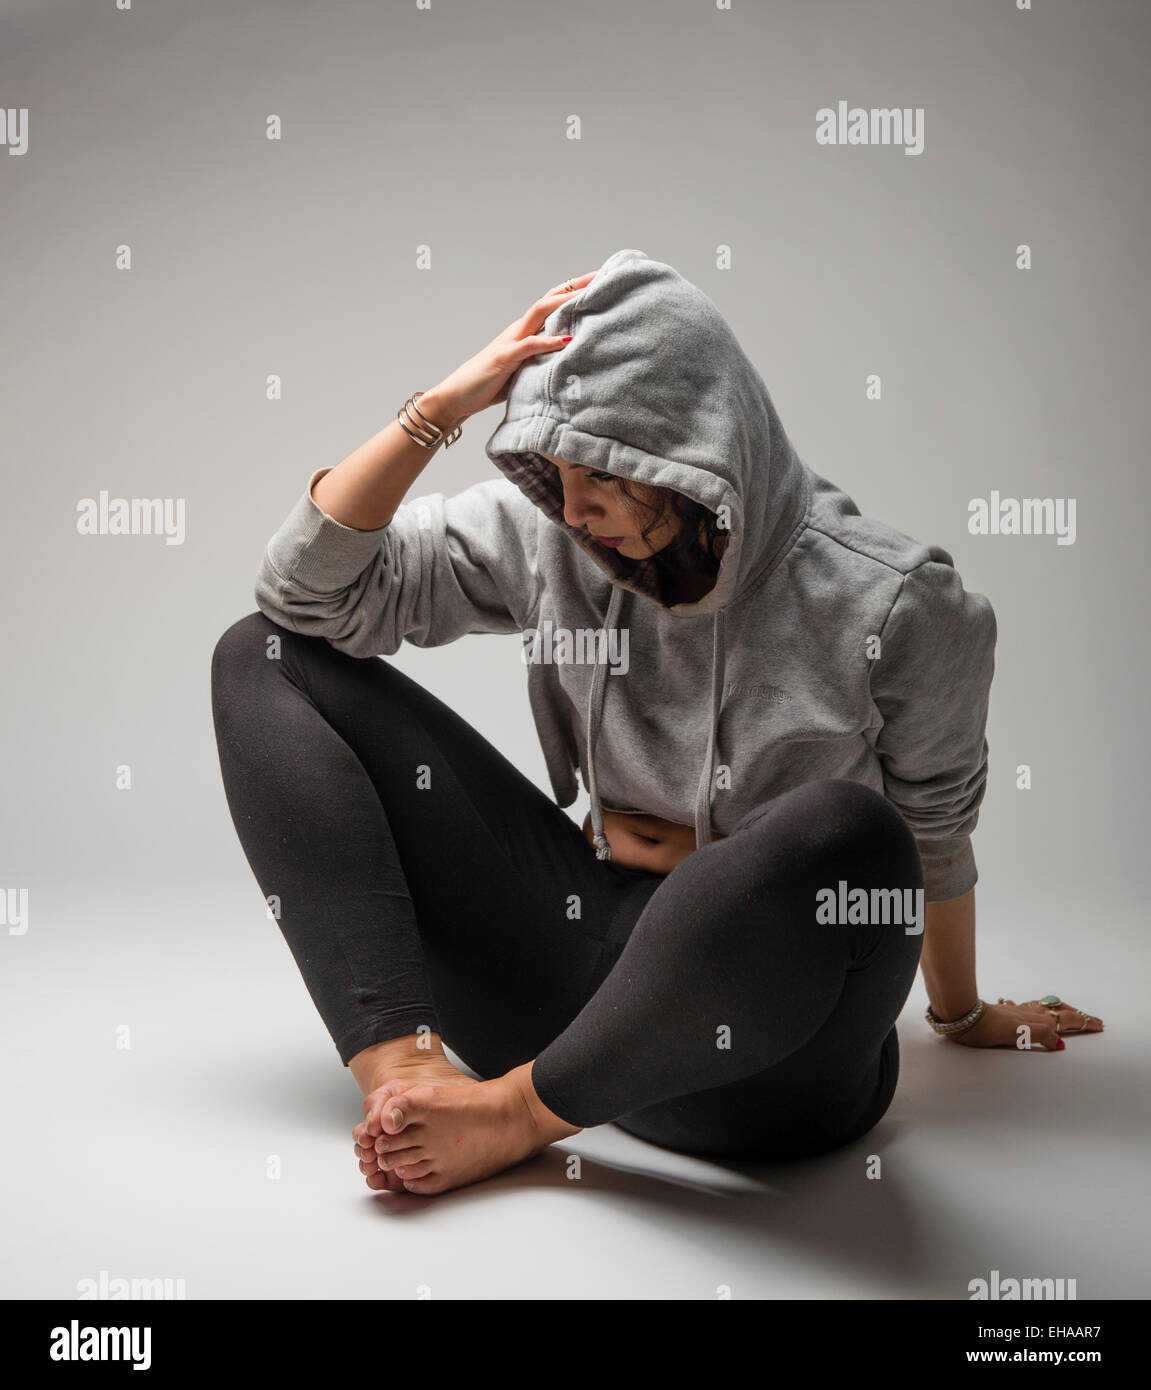 Una giovane donna adolescente ragazza introversa umore introspettivo ritirati uncommunciative, seduto sul pavimento di indossare una felpa con cappuccio grigio felpa Foto Stock